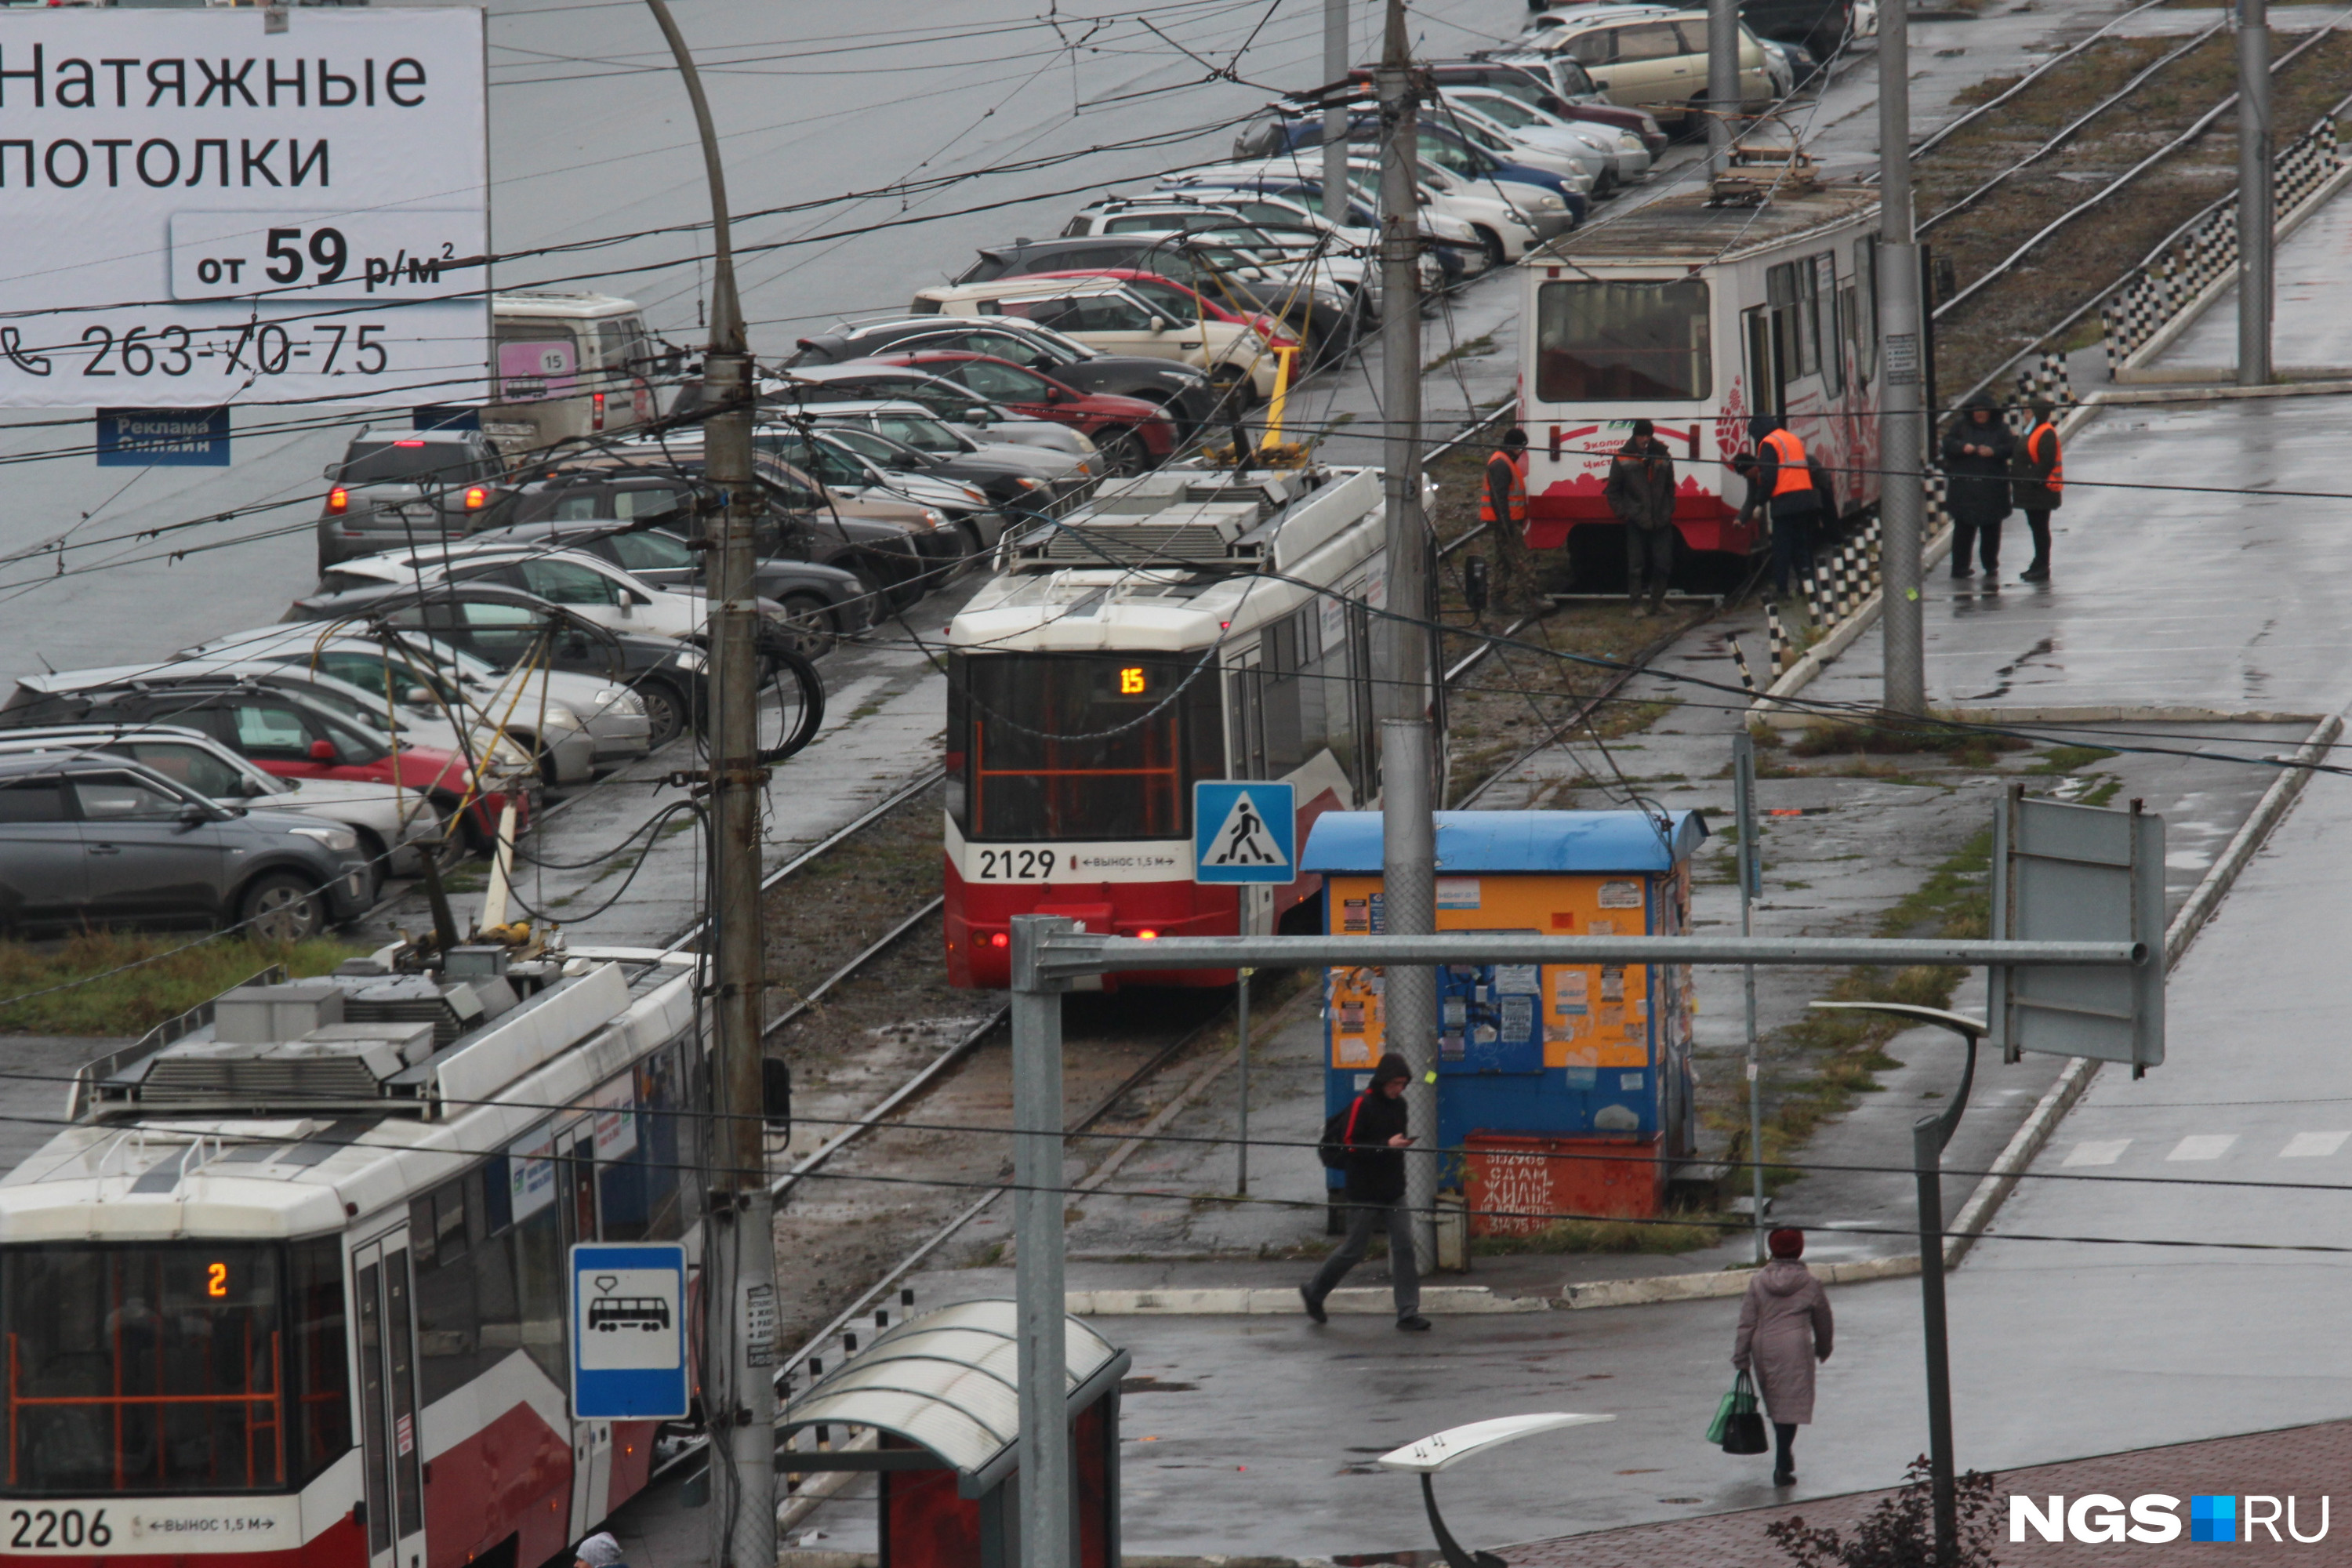 Вставшие друг за другом из-за поломки трамваи — обычная картина для Новосибирска